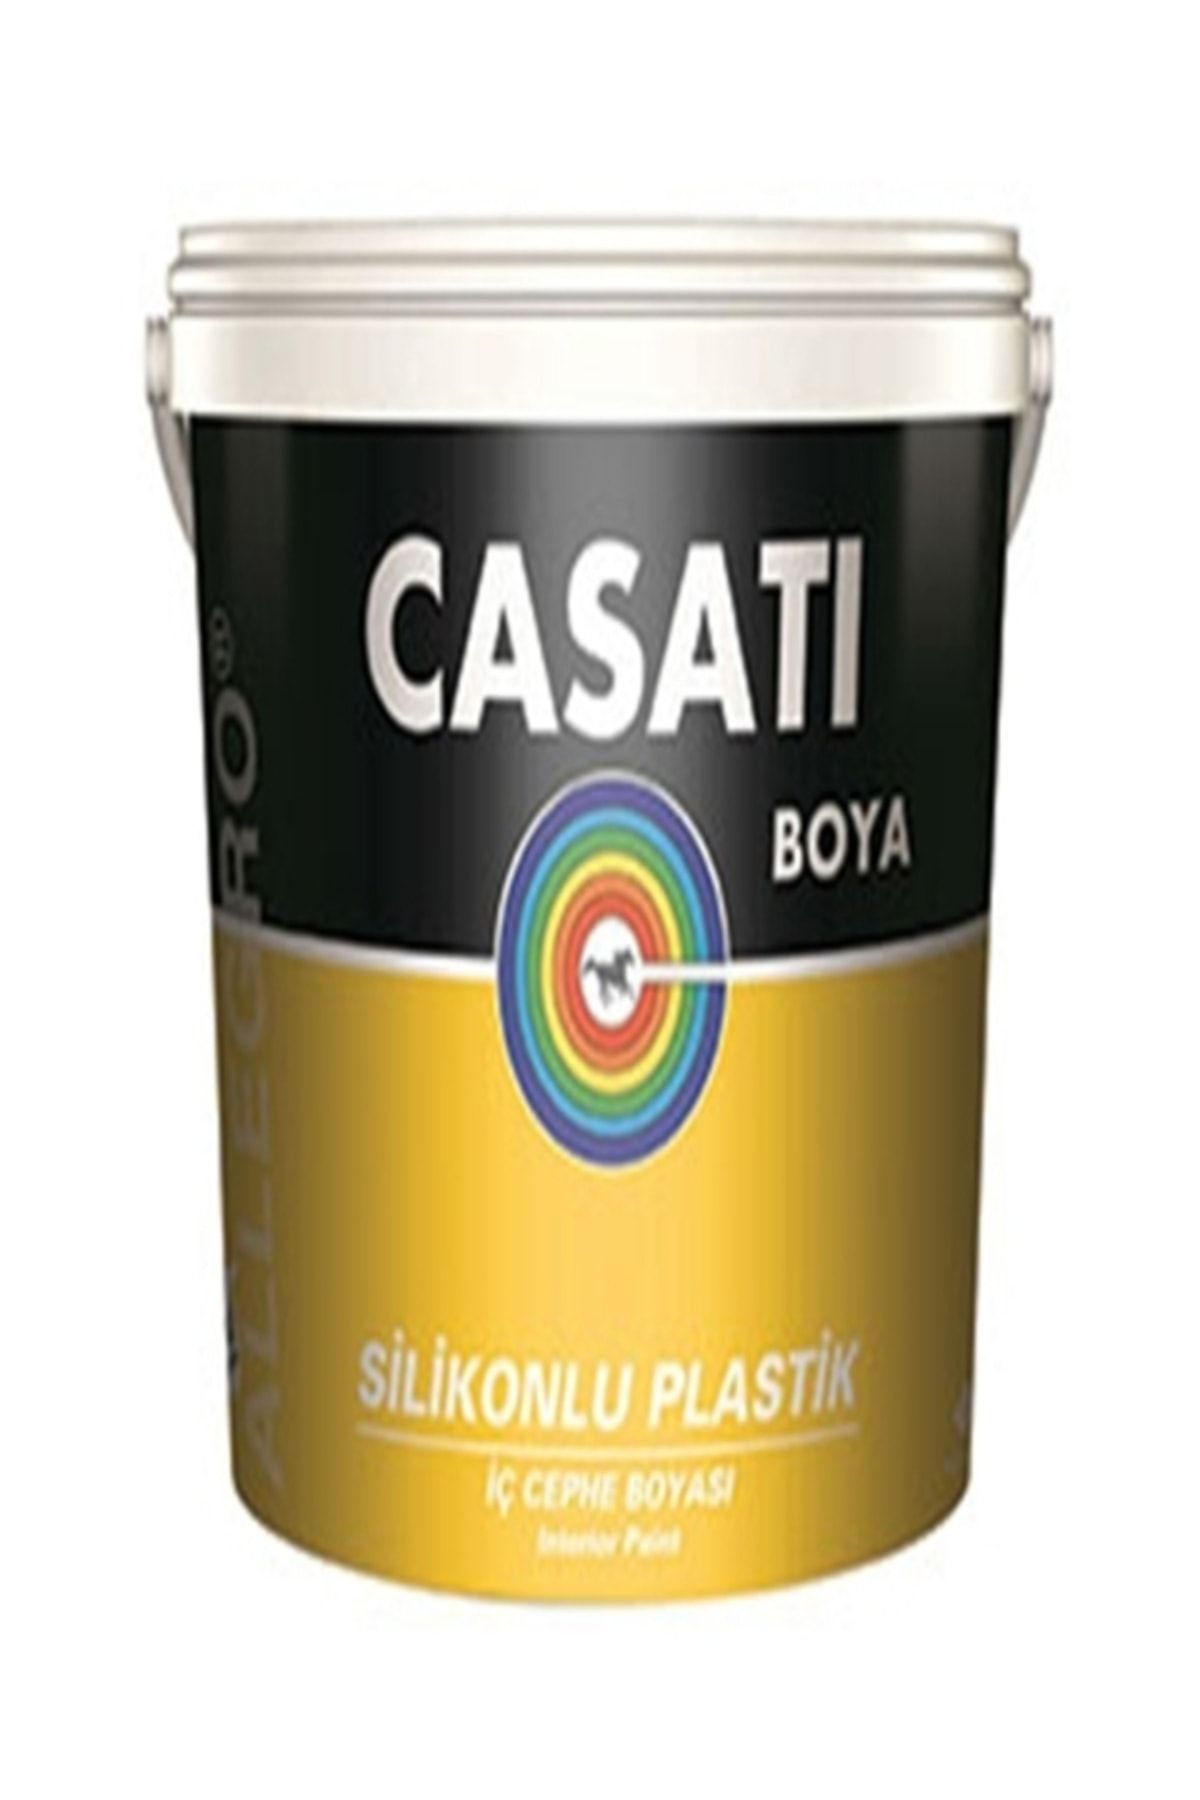 Casati Dyo Allegro Silikonlu Plastik 20 Kg Iç Cephe Boyası